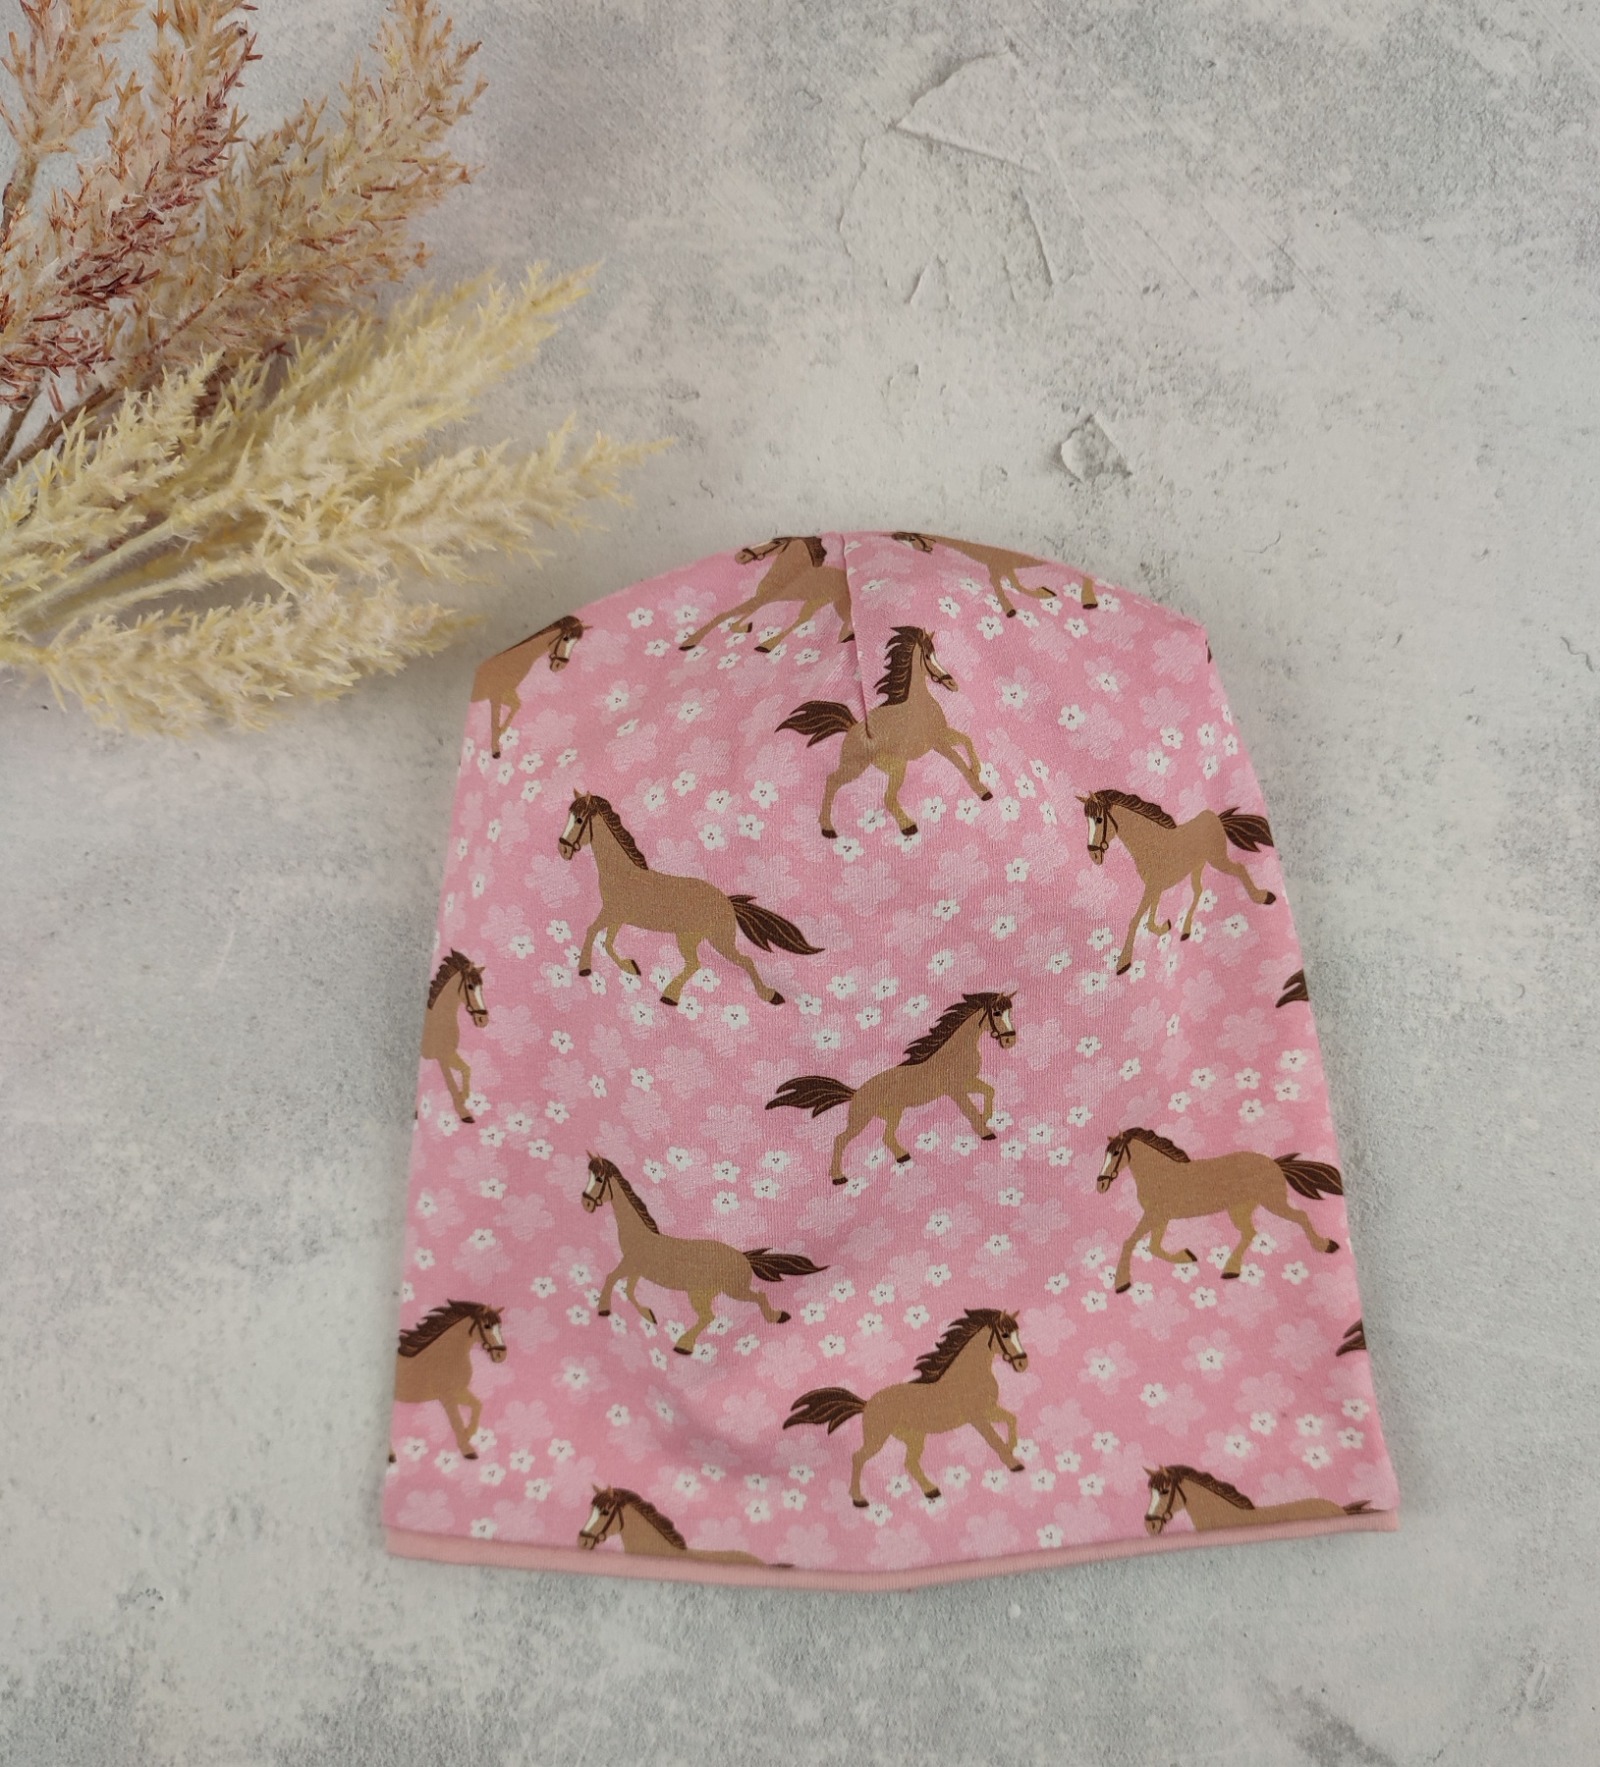 Beanie für kleine Mädchen - Kindermütze aus Jersey in rosa mit Pferden und Blumen Größe ca 44 - 48 cm Kopfumfang 5